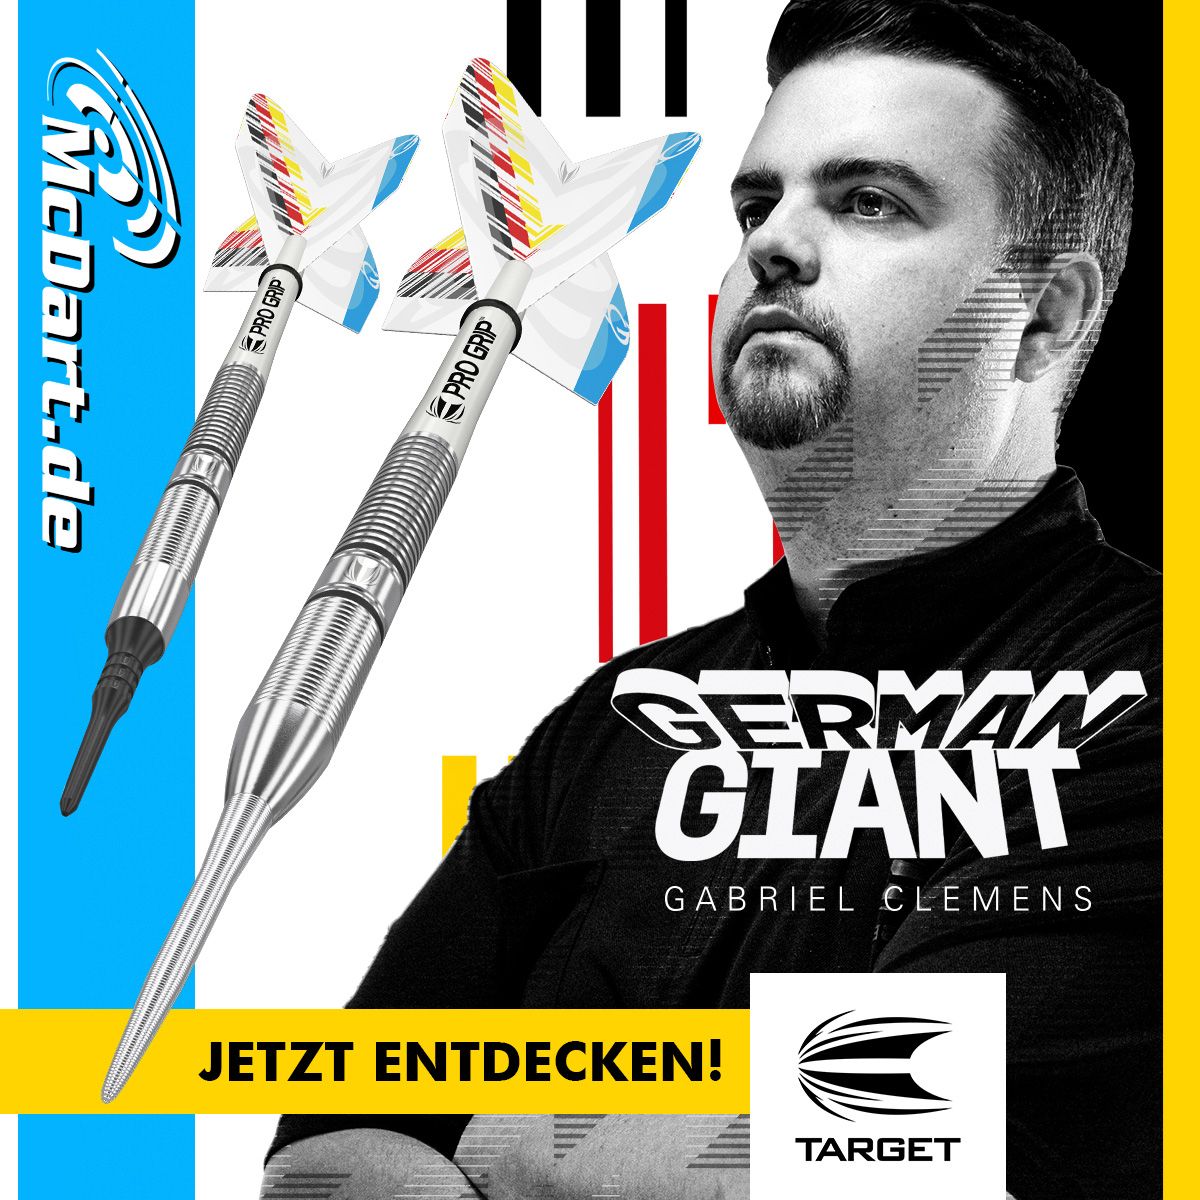 Doelwit Gabriel Clemens Generation One zachte darts